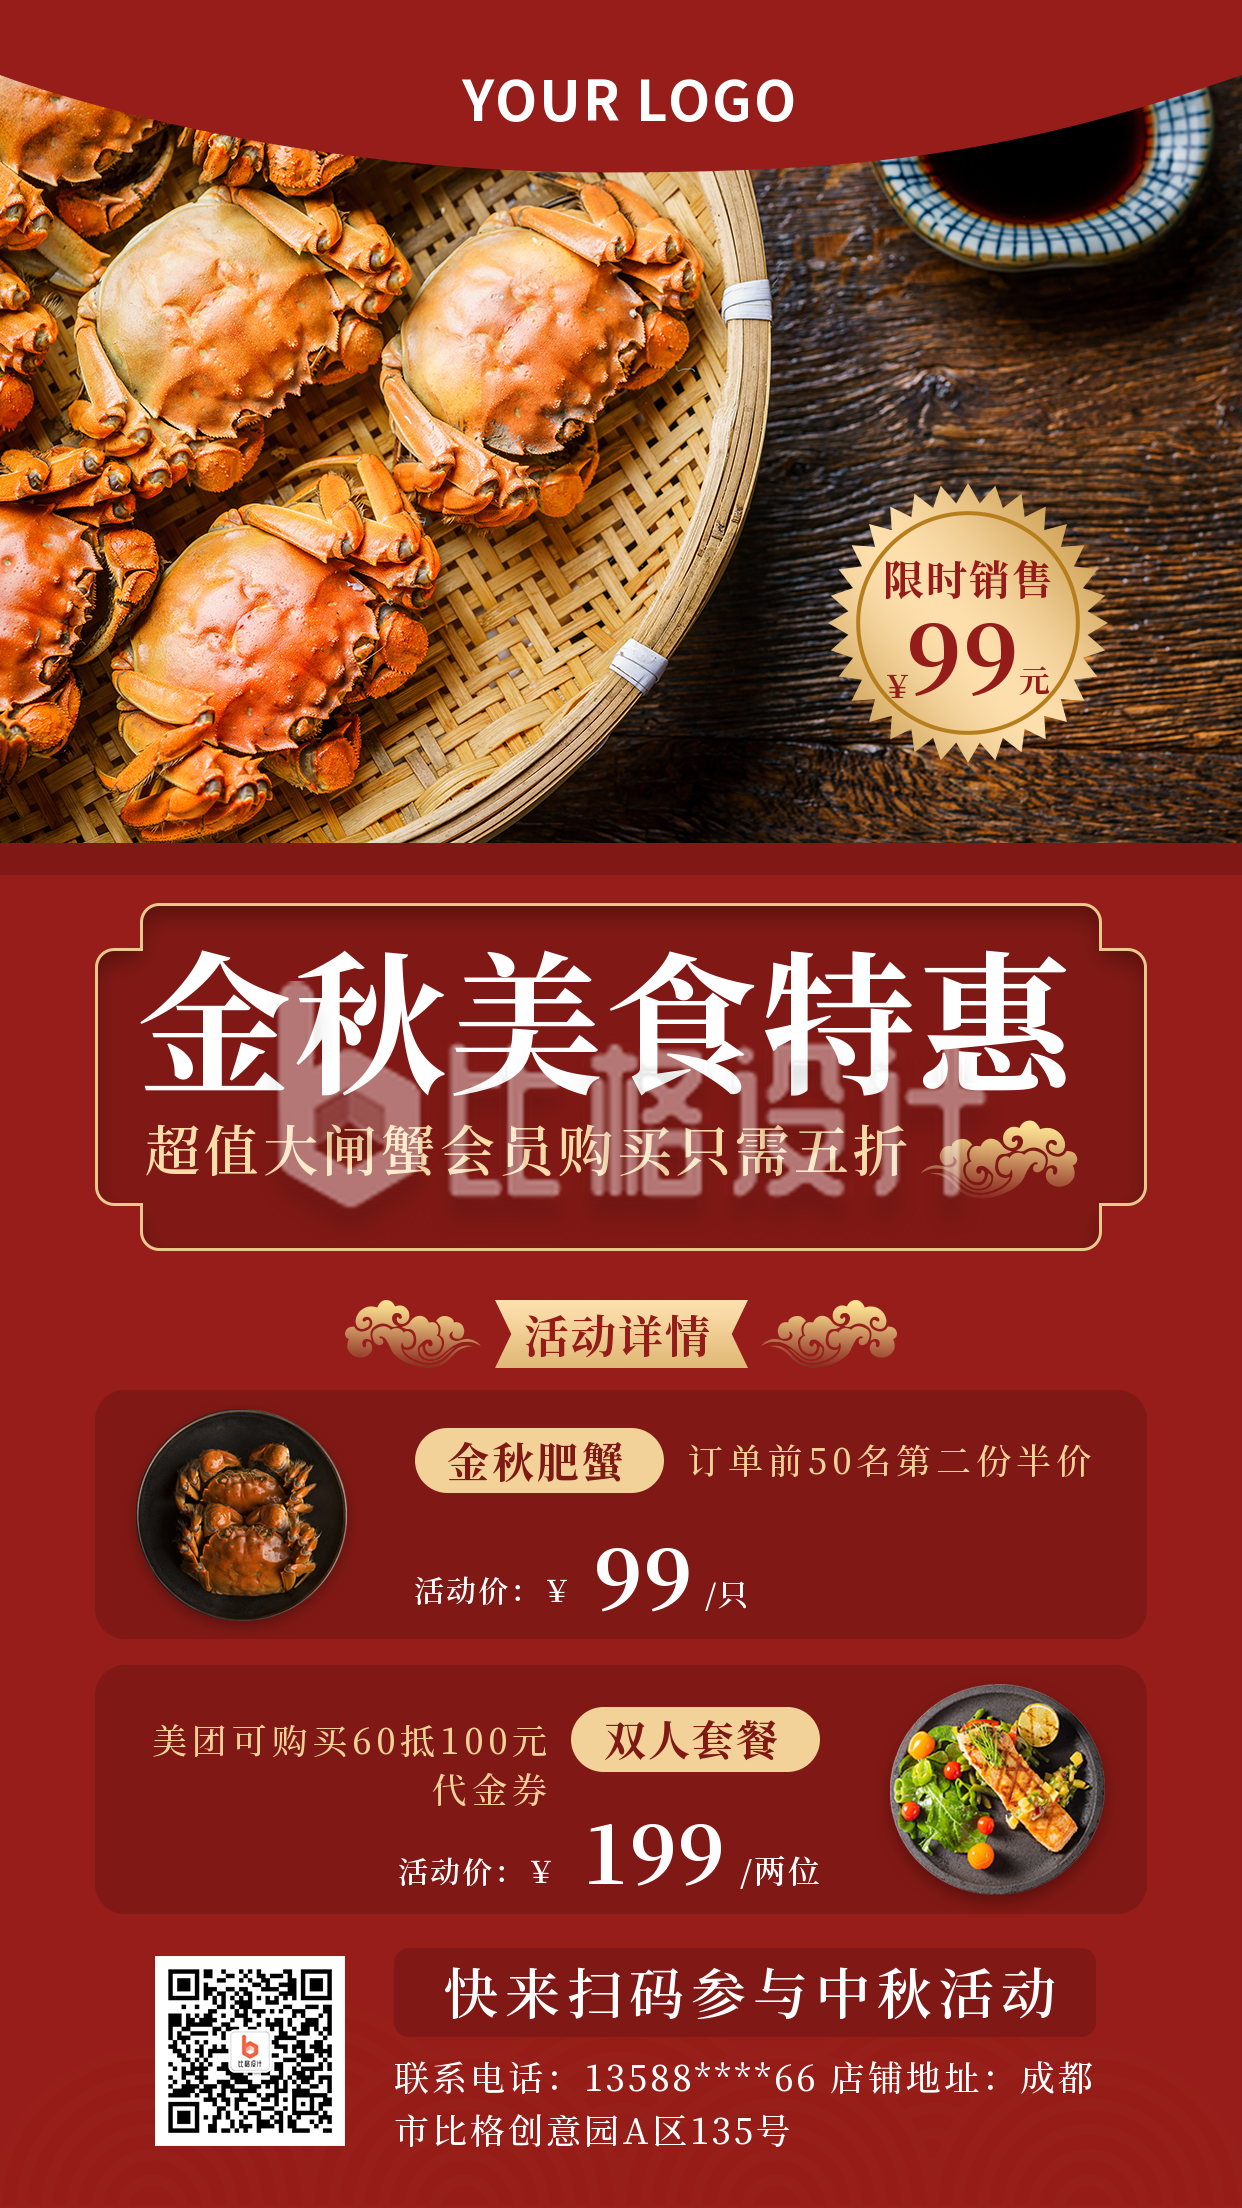 中秋节美食特惠活动宣传实景红色手机海报